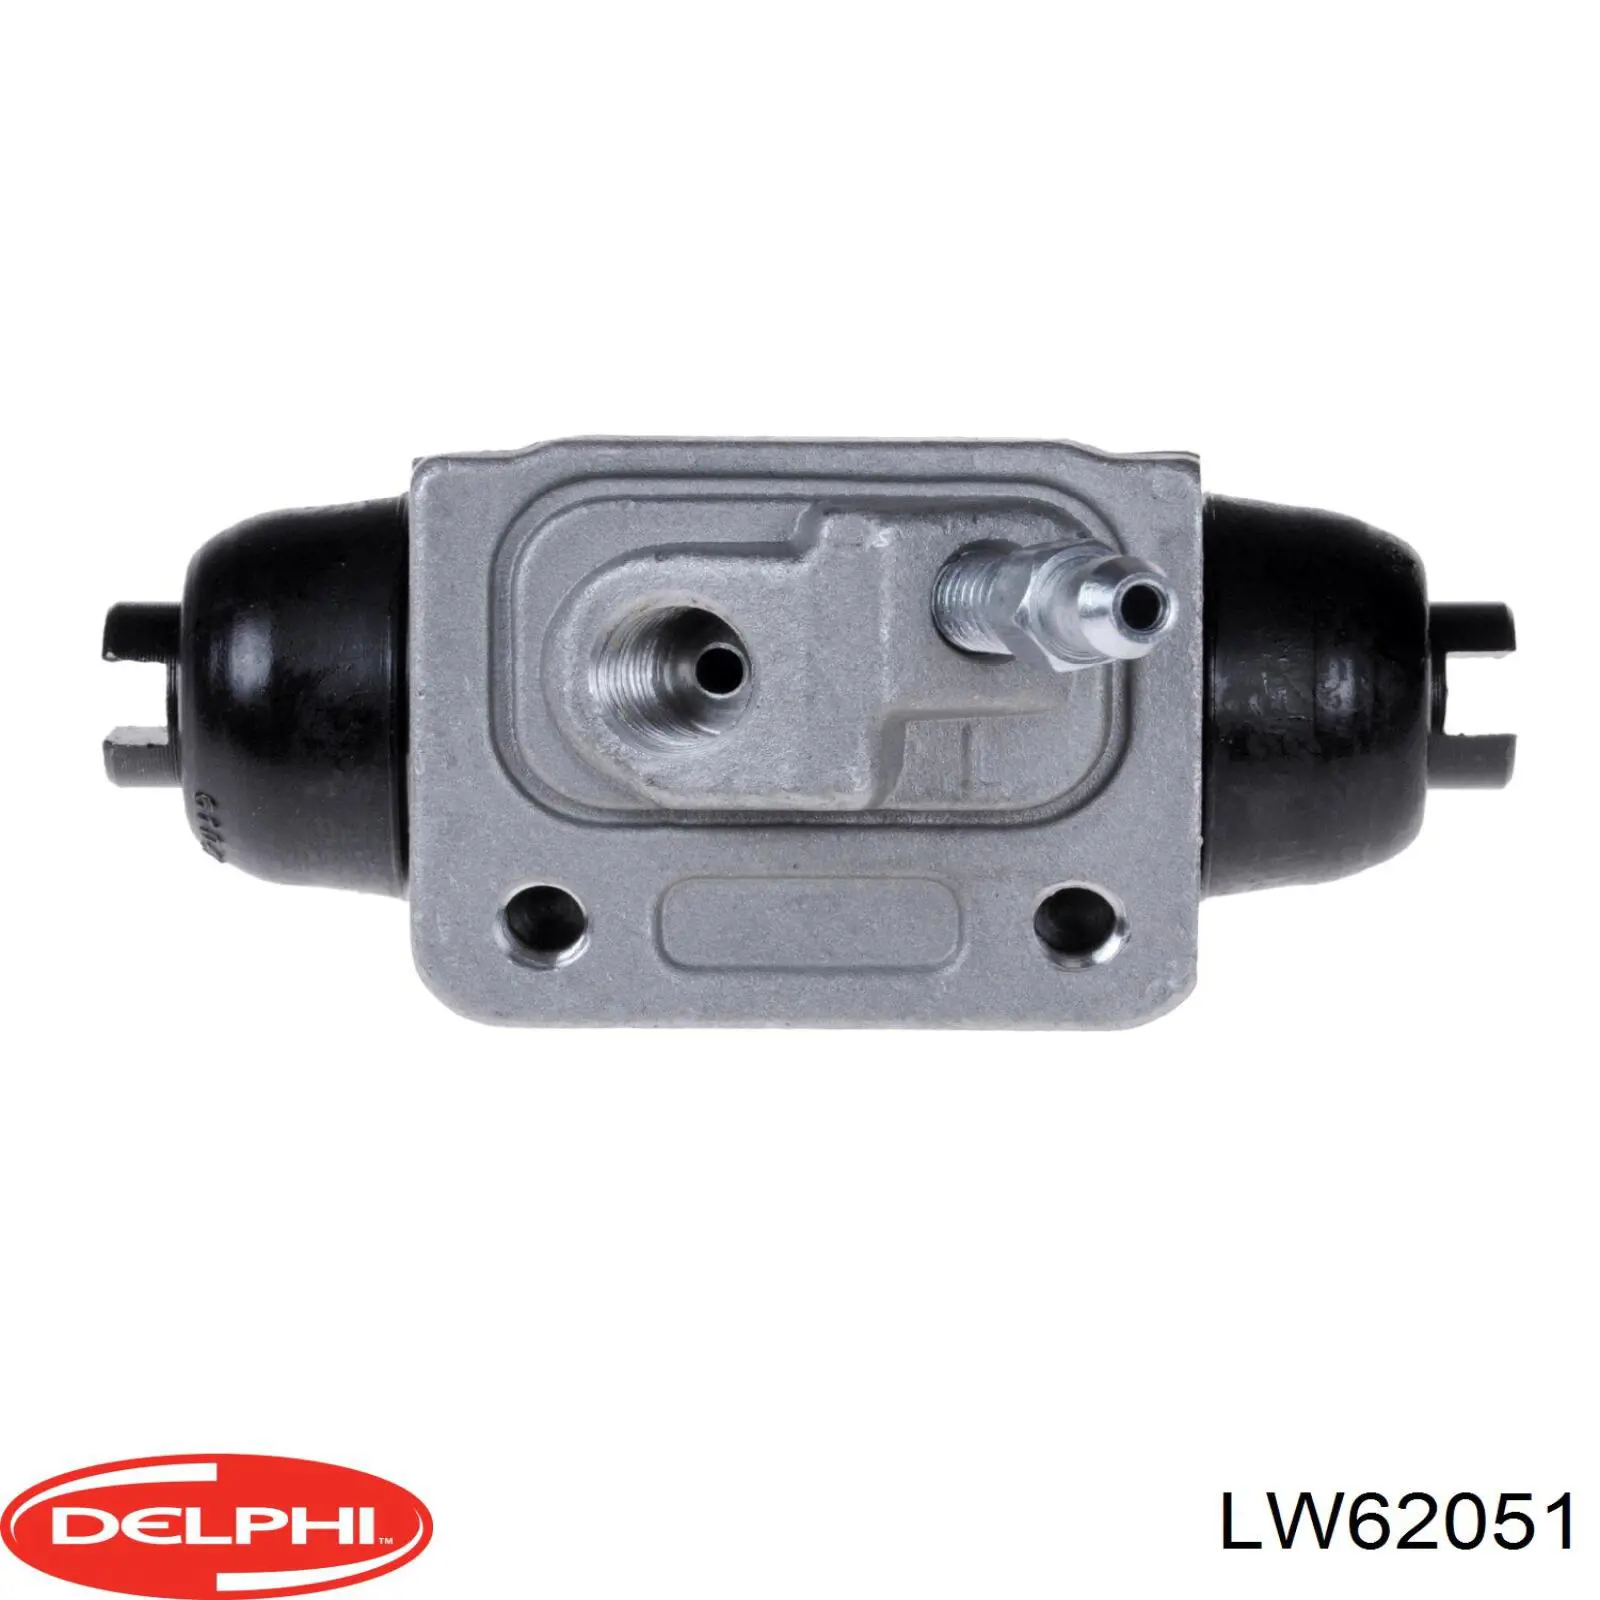 LW62051 Delphi cilindro de freno de rueda trasero